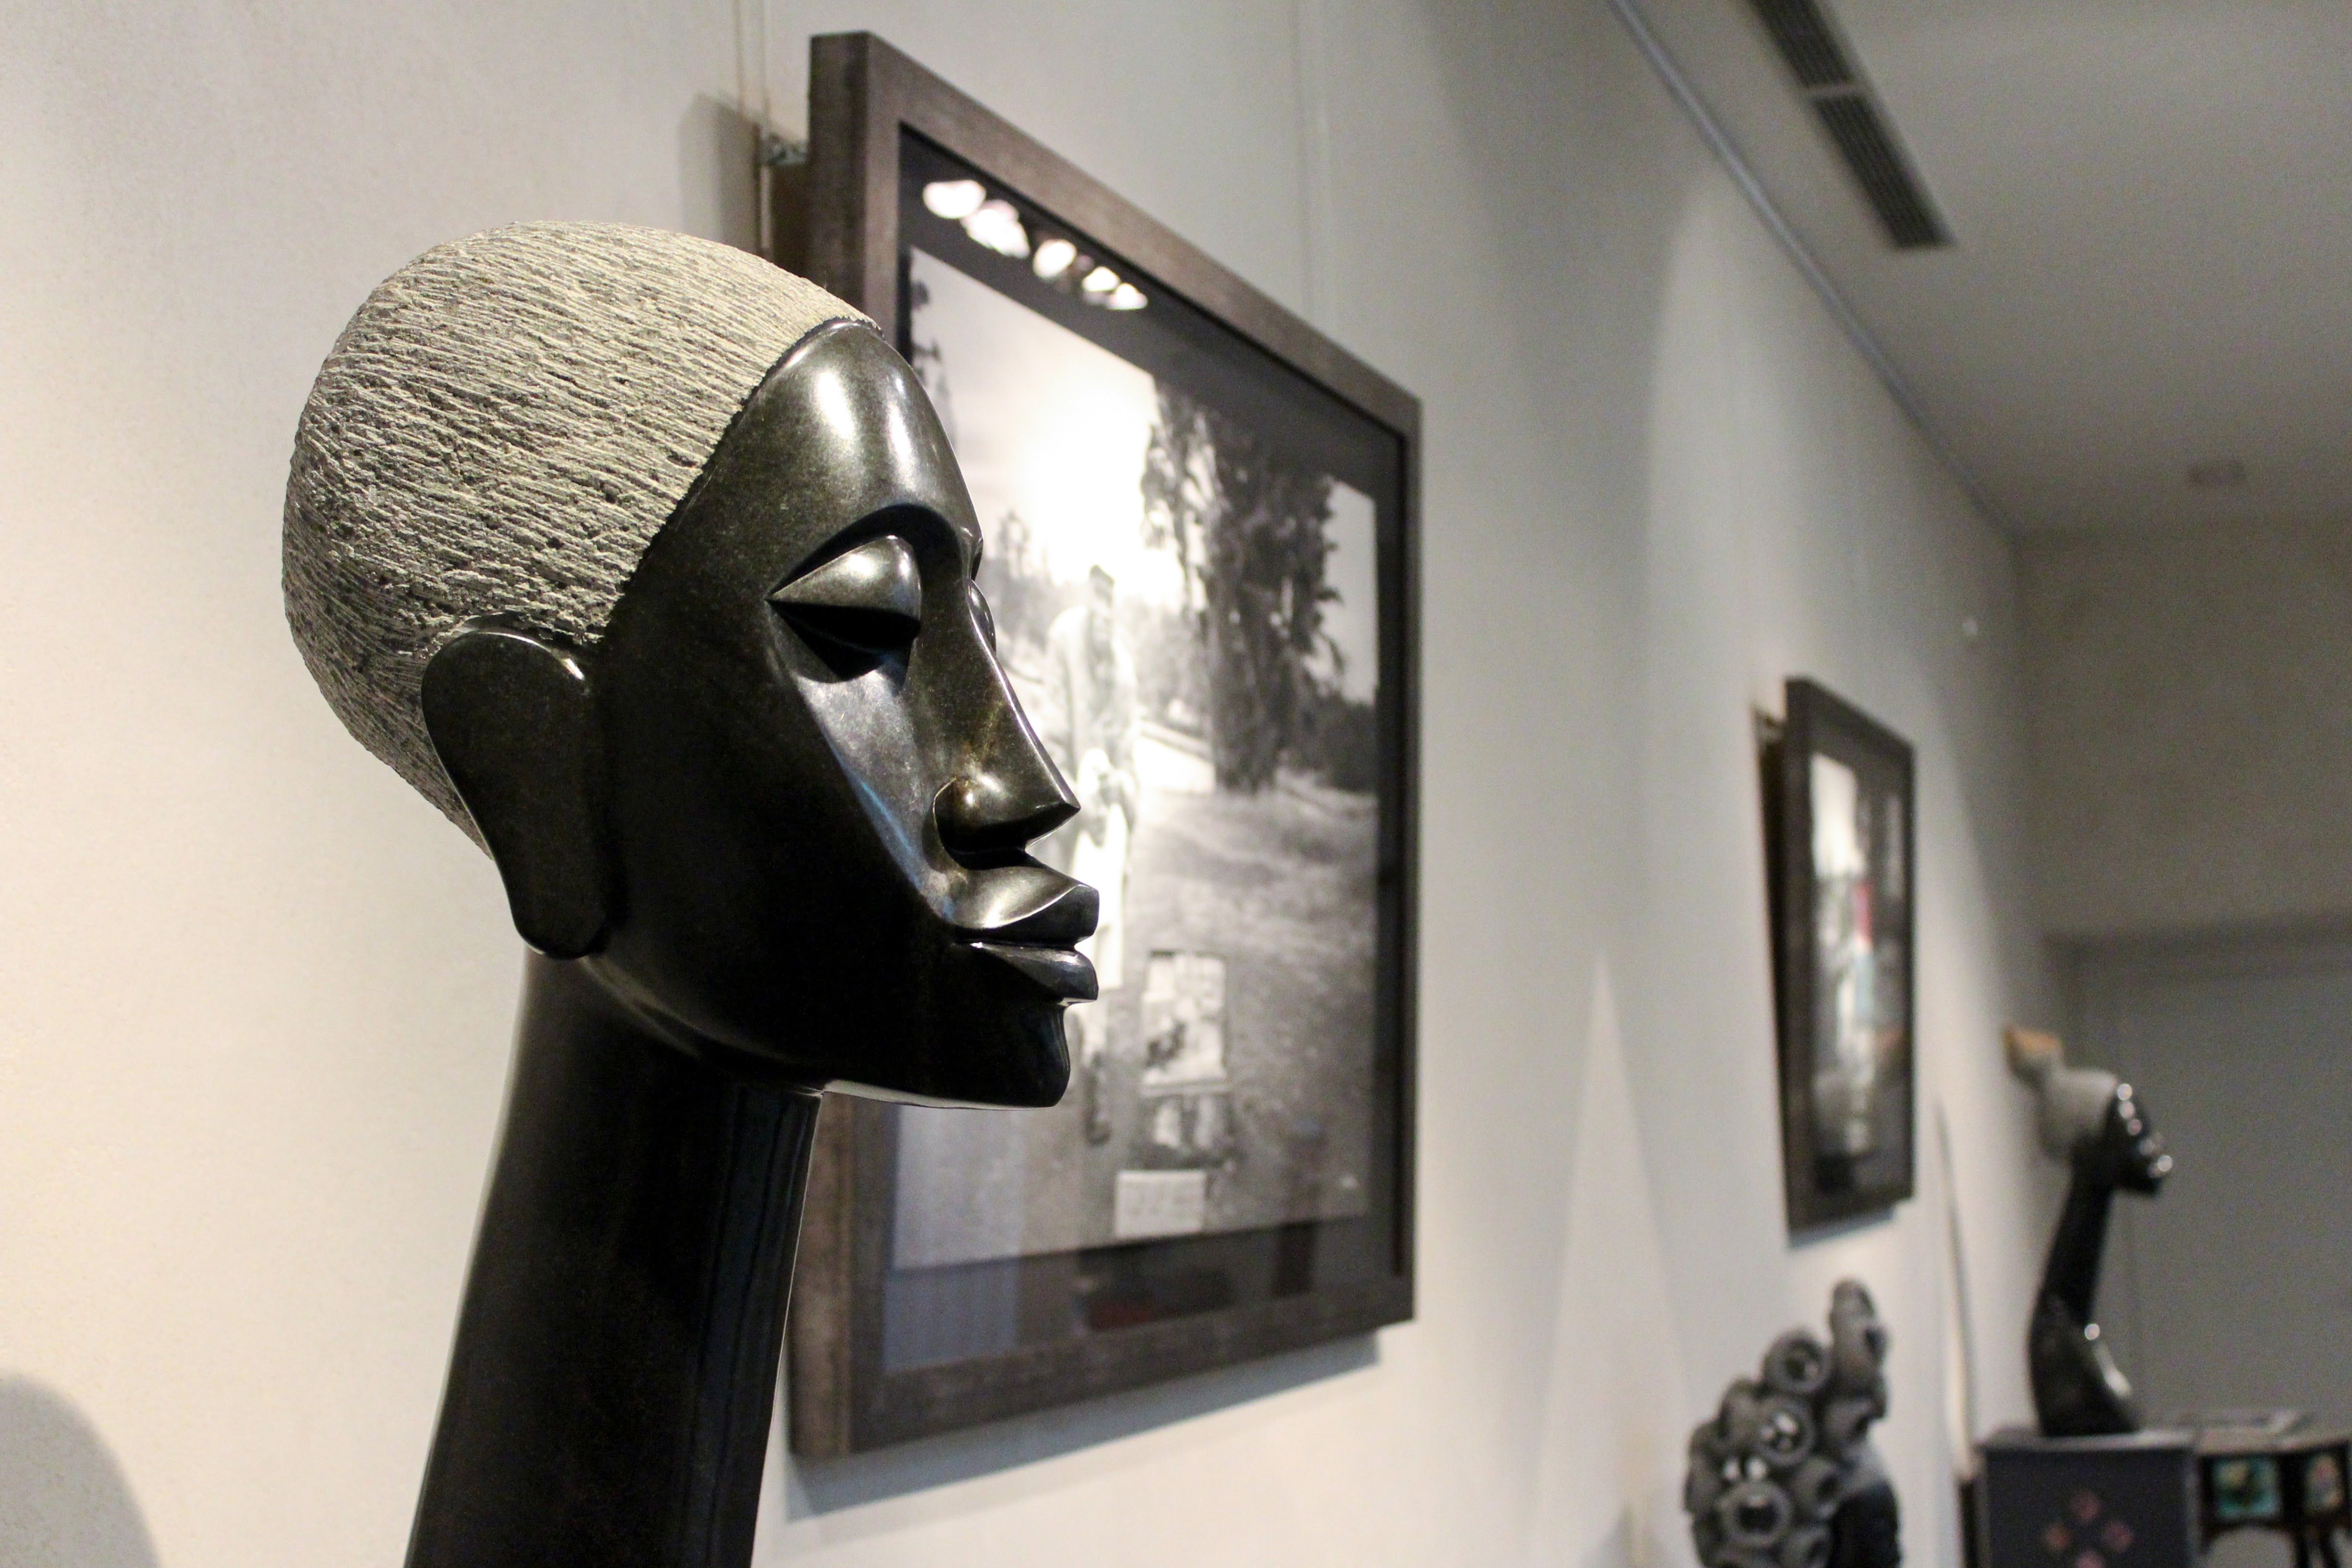 Foto 19 de African art gallery en Madrid | Gazzambo Gallery